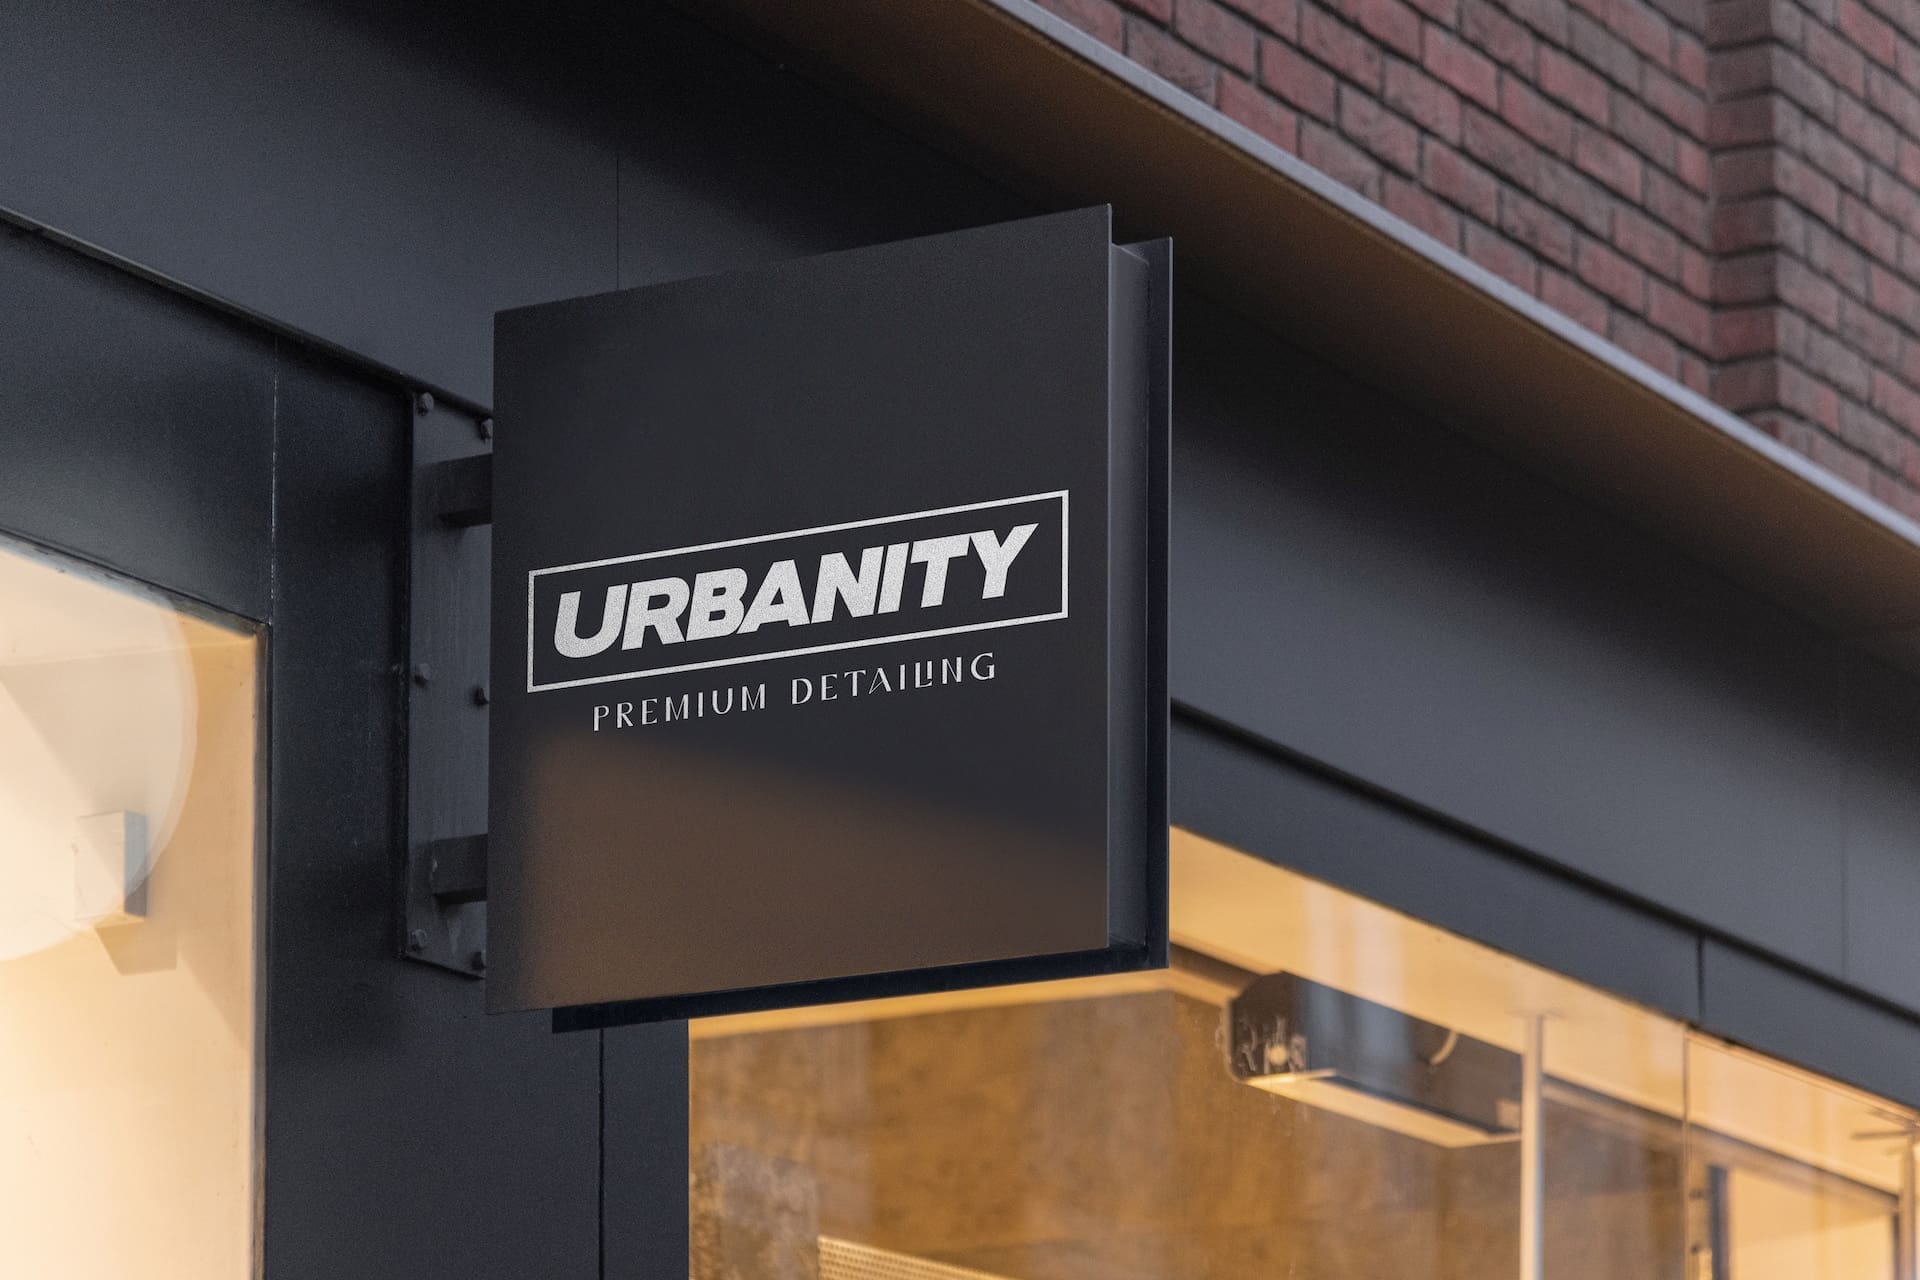 Branding for Urbanity Premium Detailing by Spacey Studios.